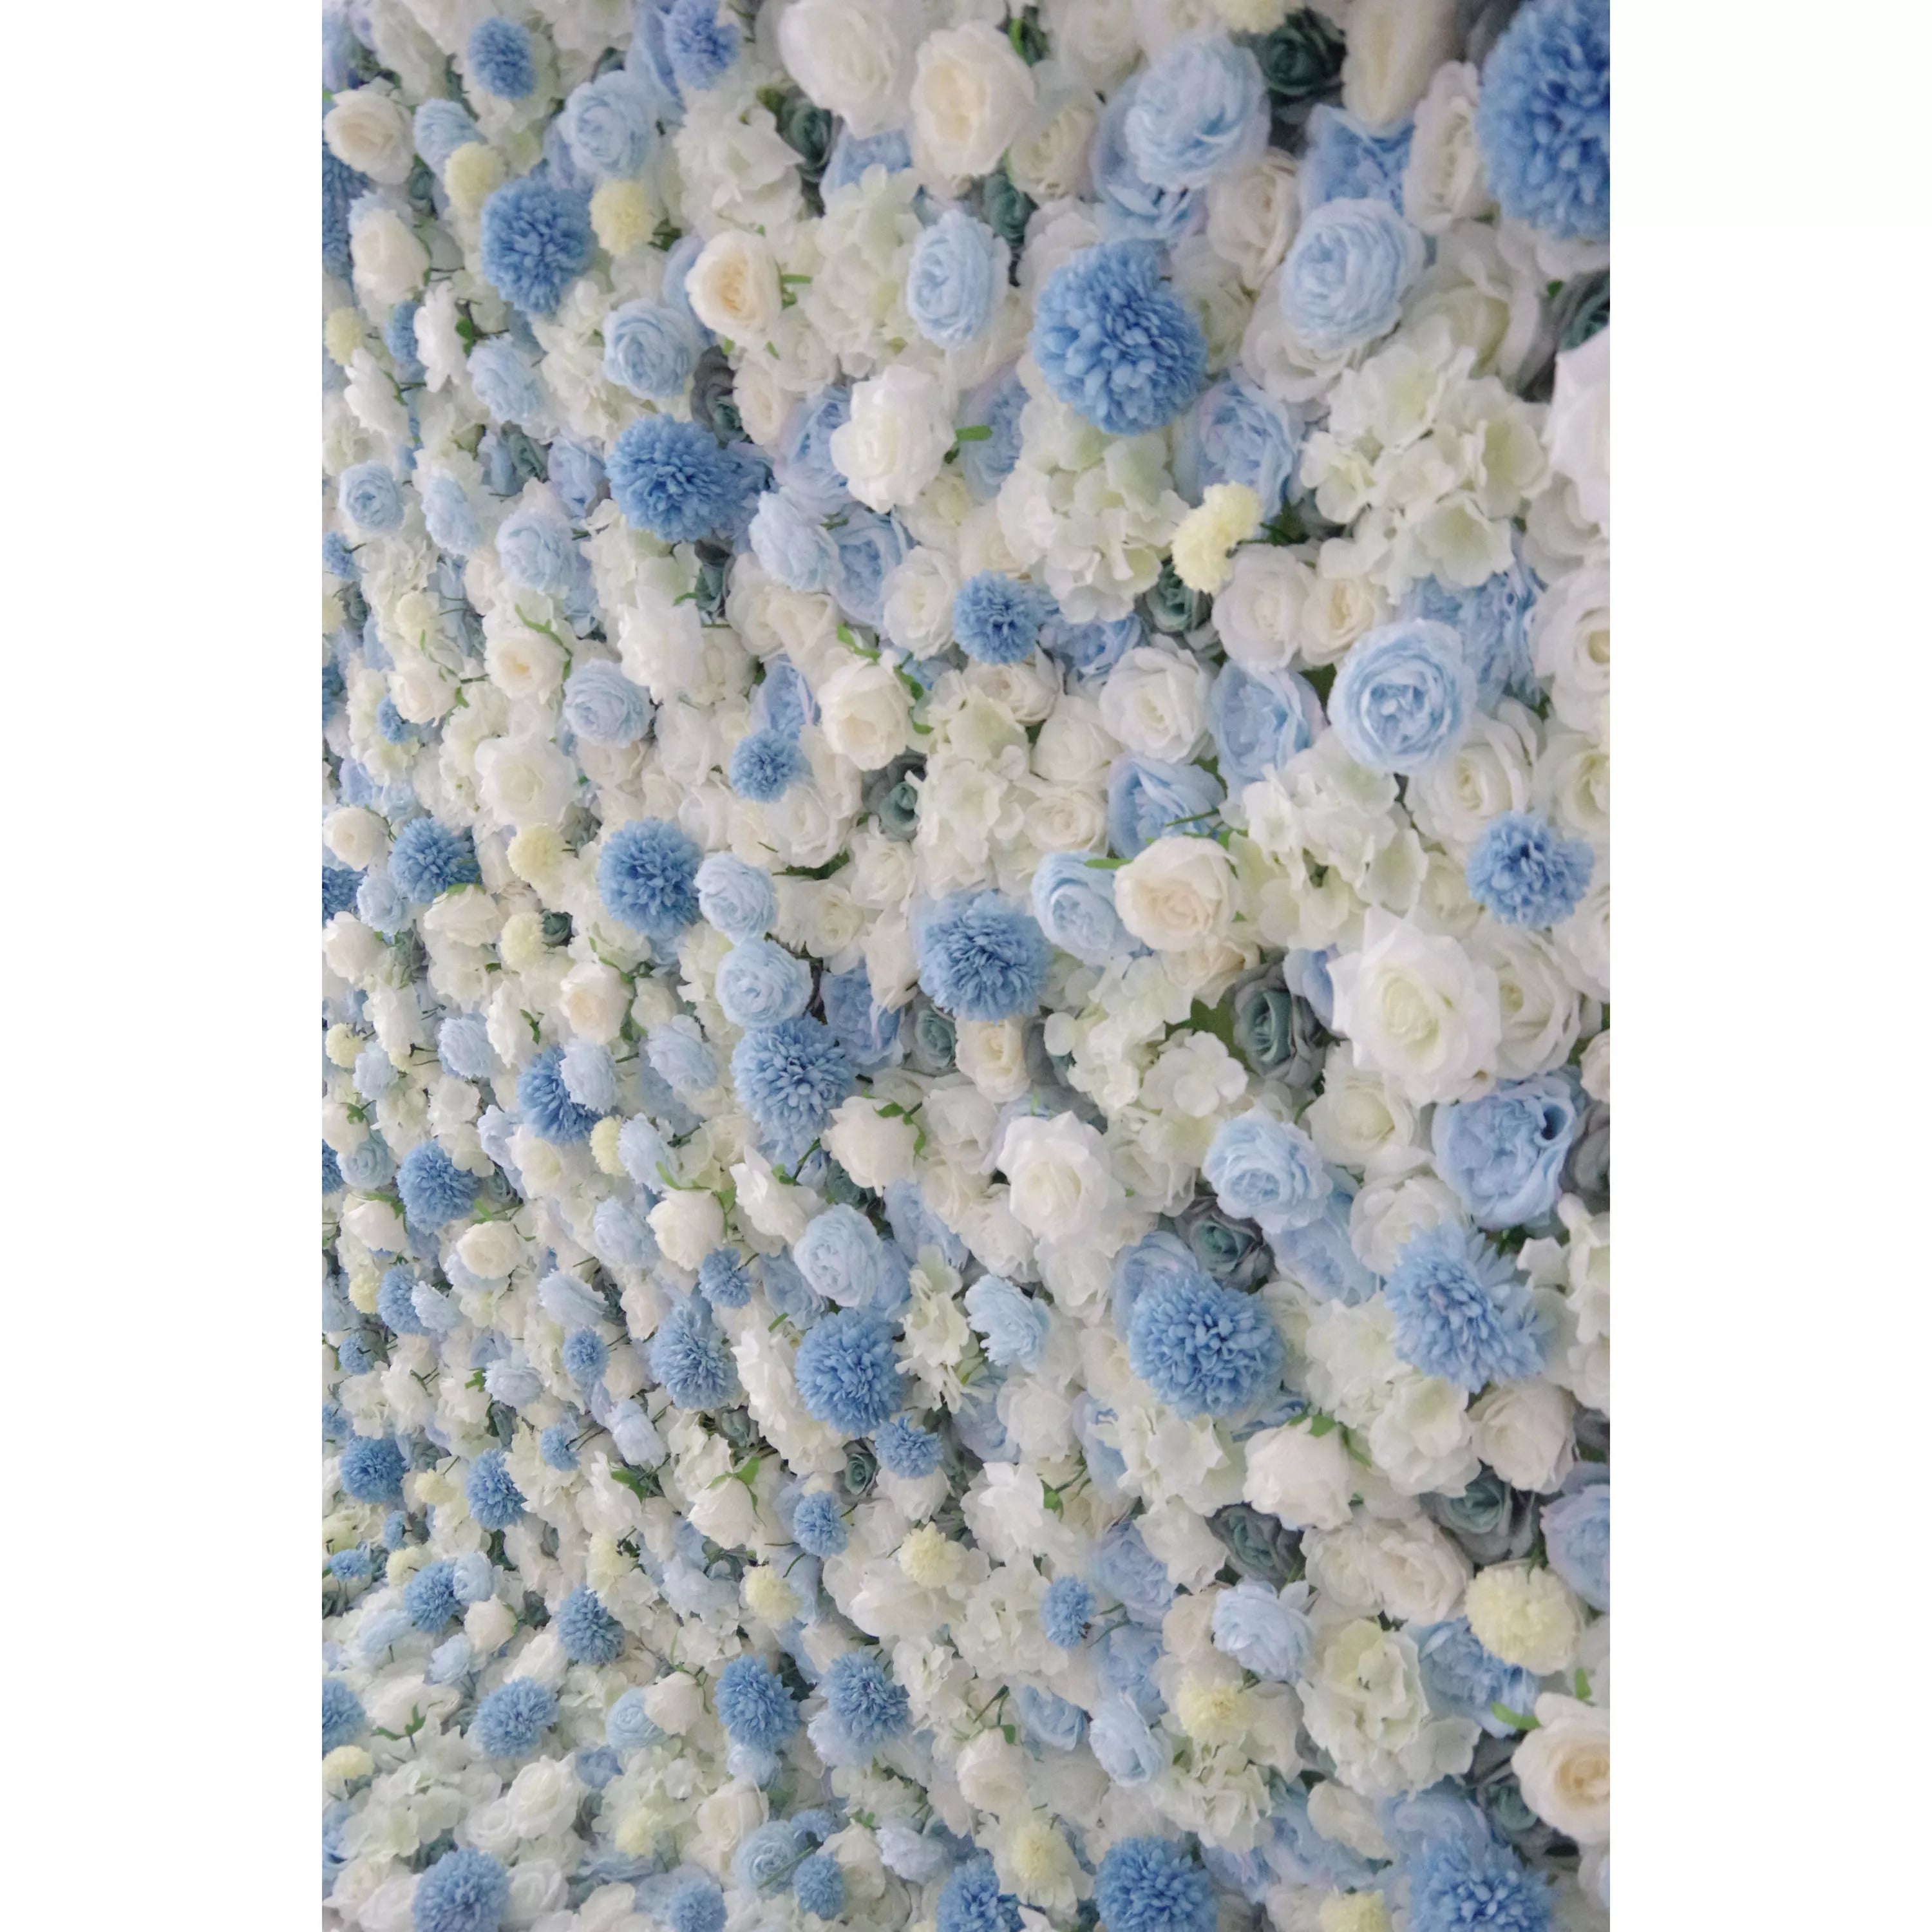 زهرة فالار لفة النسيج الاصطناعي مختلطة الطفل الأزرق والأبيض جدار الأزهار خلفية الزفاف ، ديكور الحزب الأزهار ، الحدث